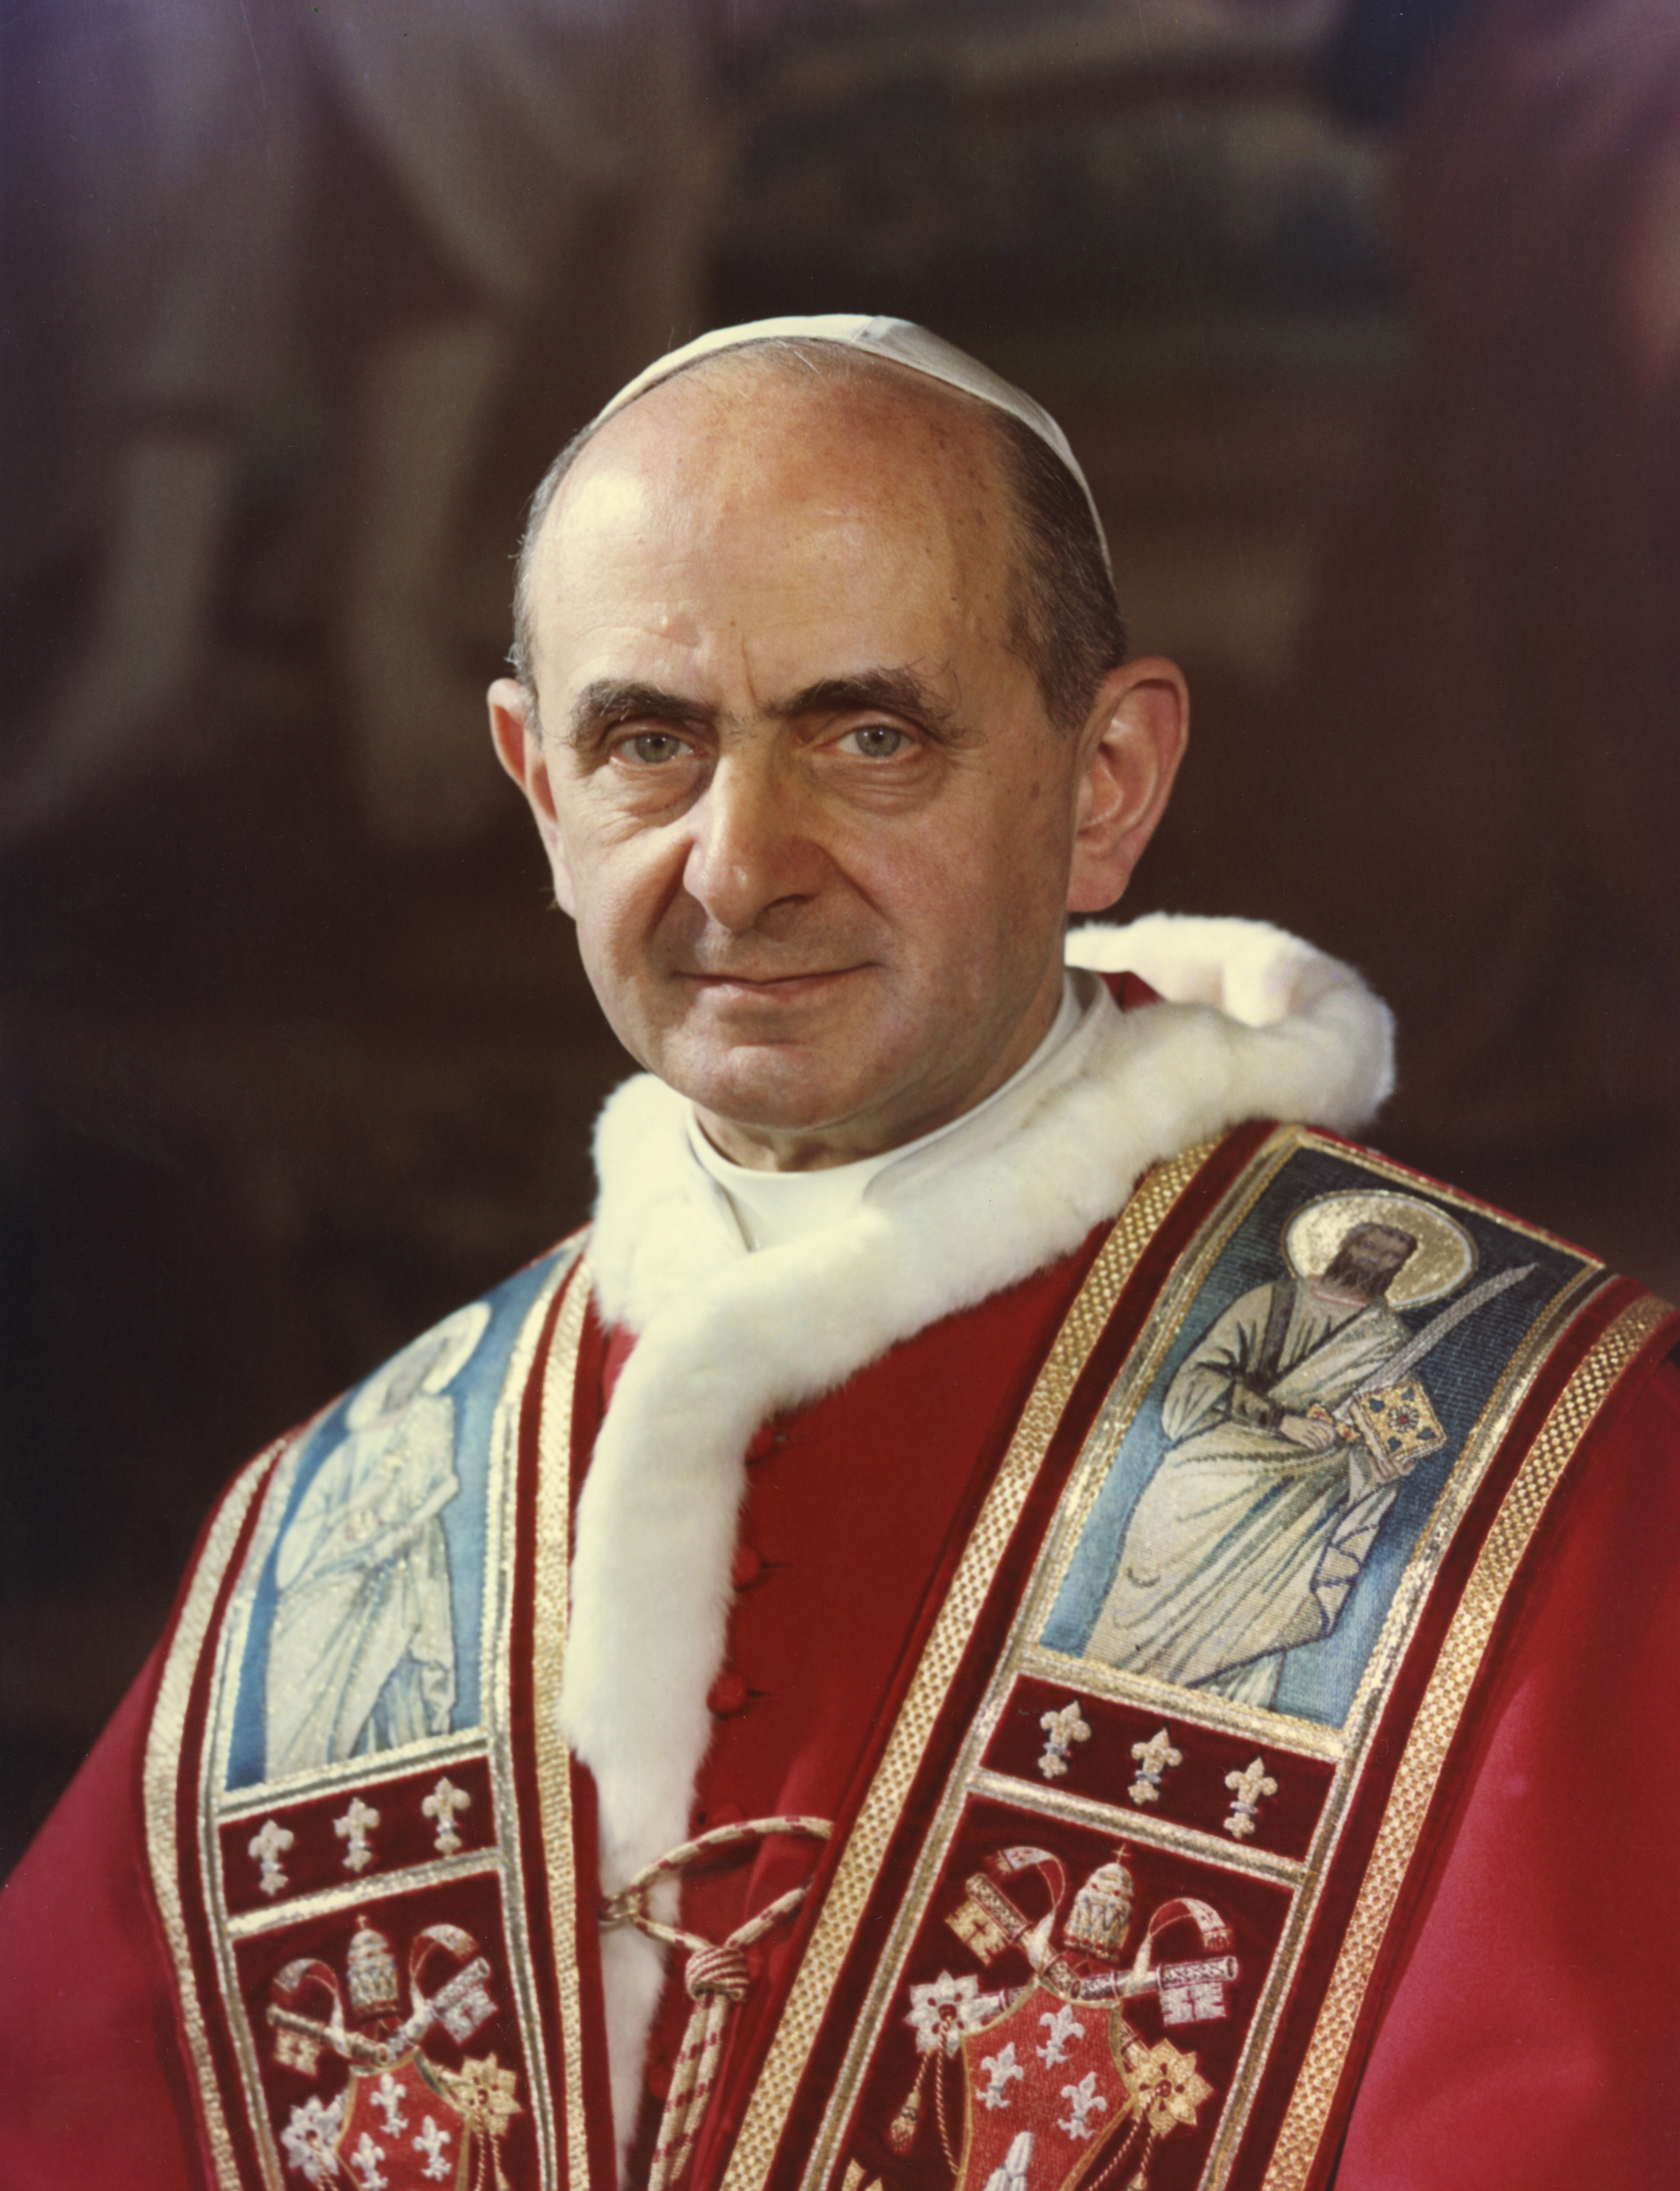 Ngày 29/05: Giáo hoàng Phaolô VI